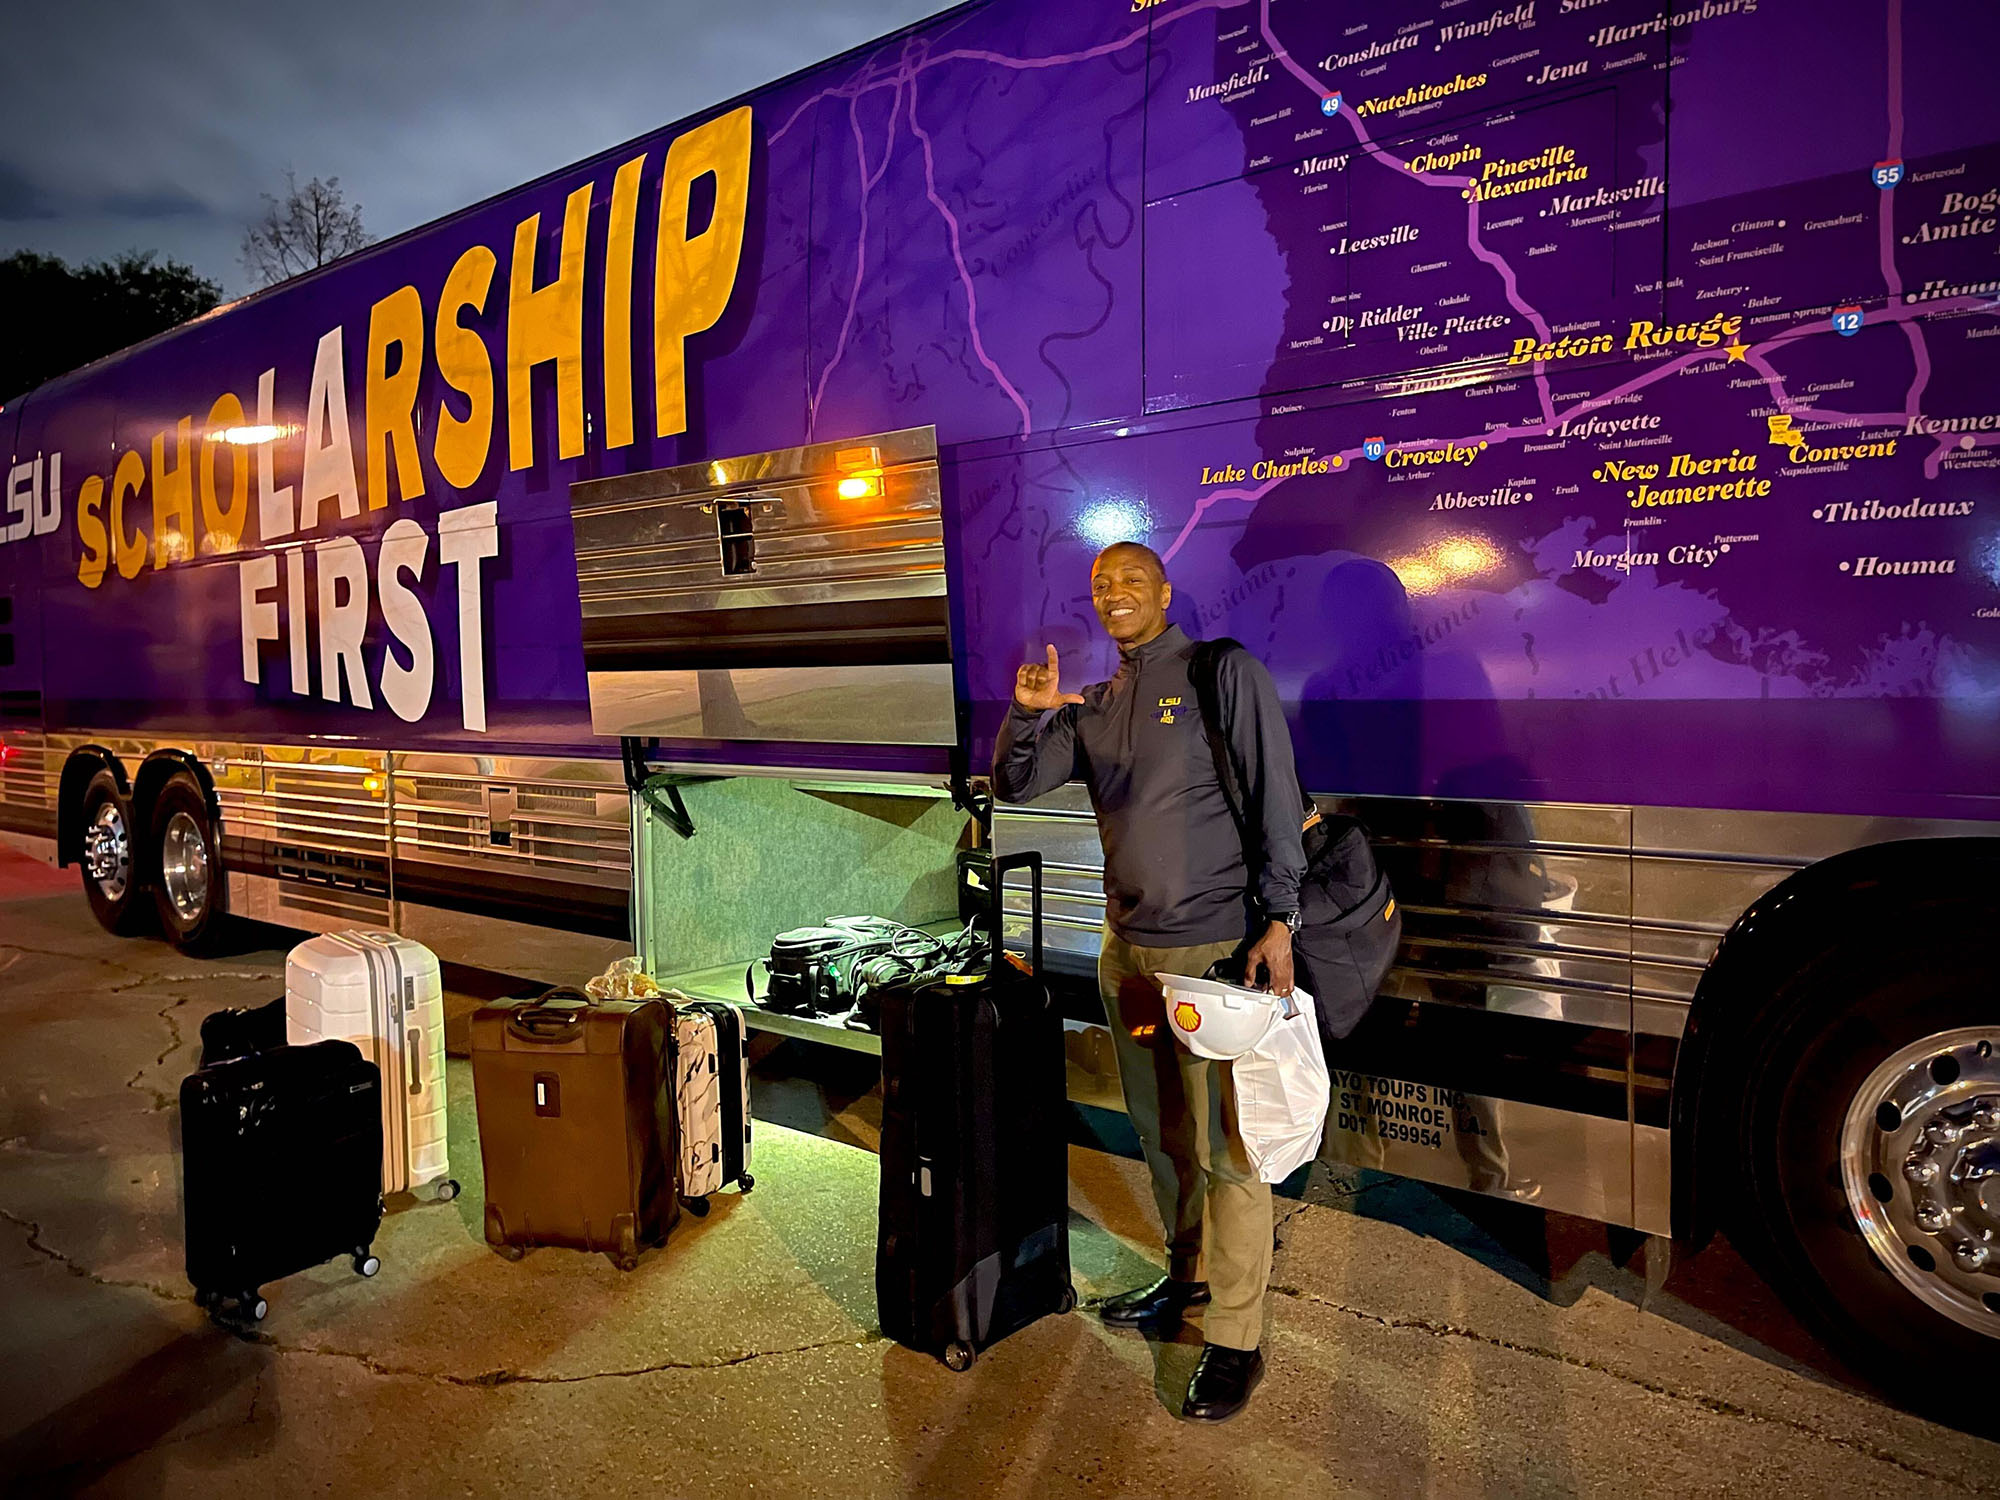 President Tate loading luggage onto the tour bus